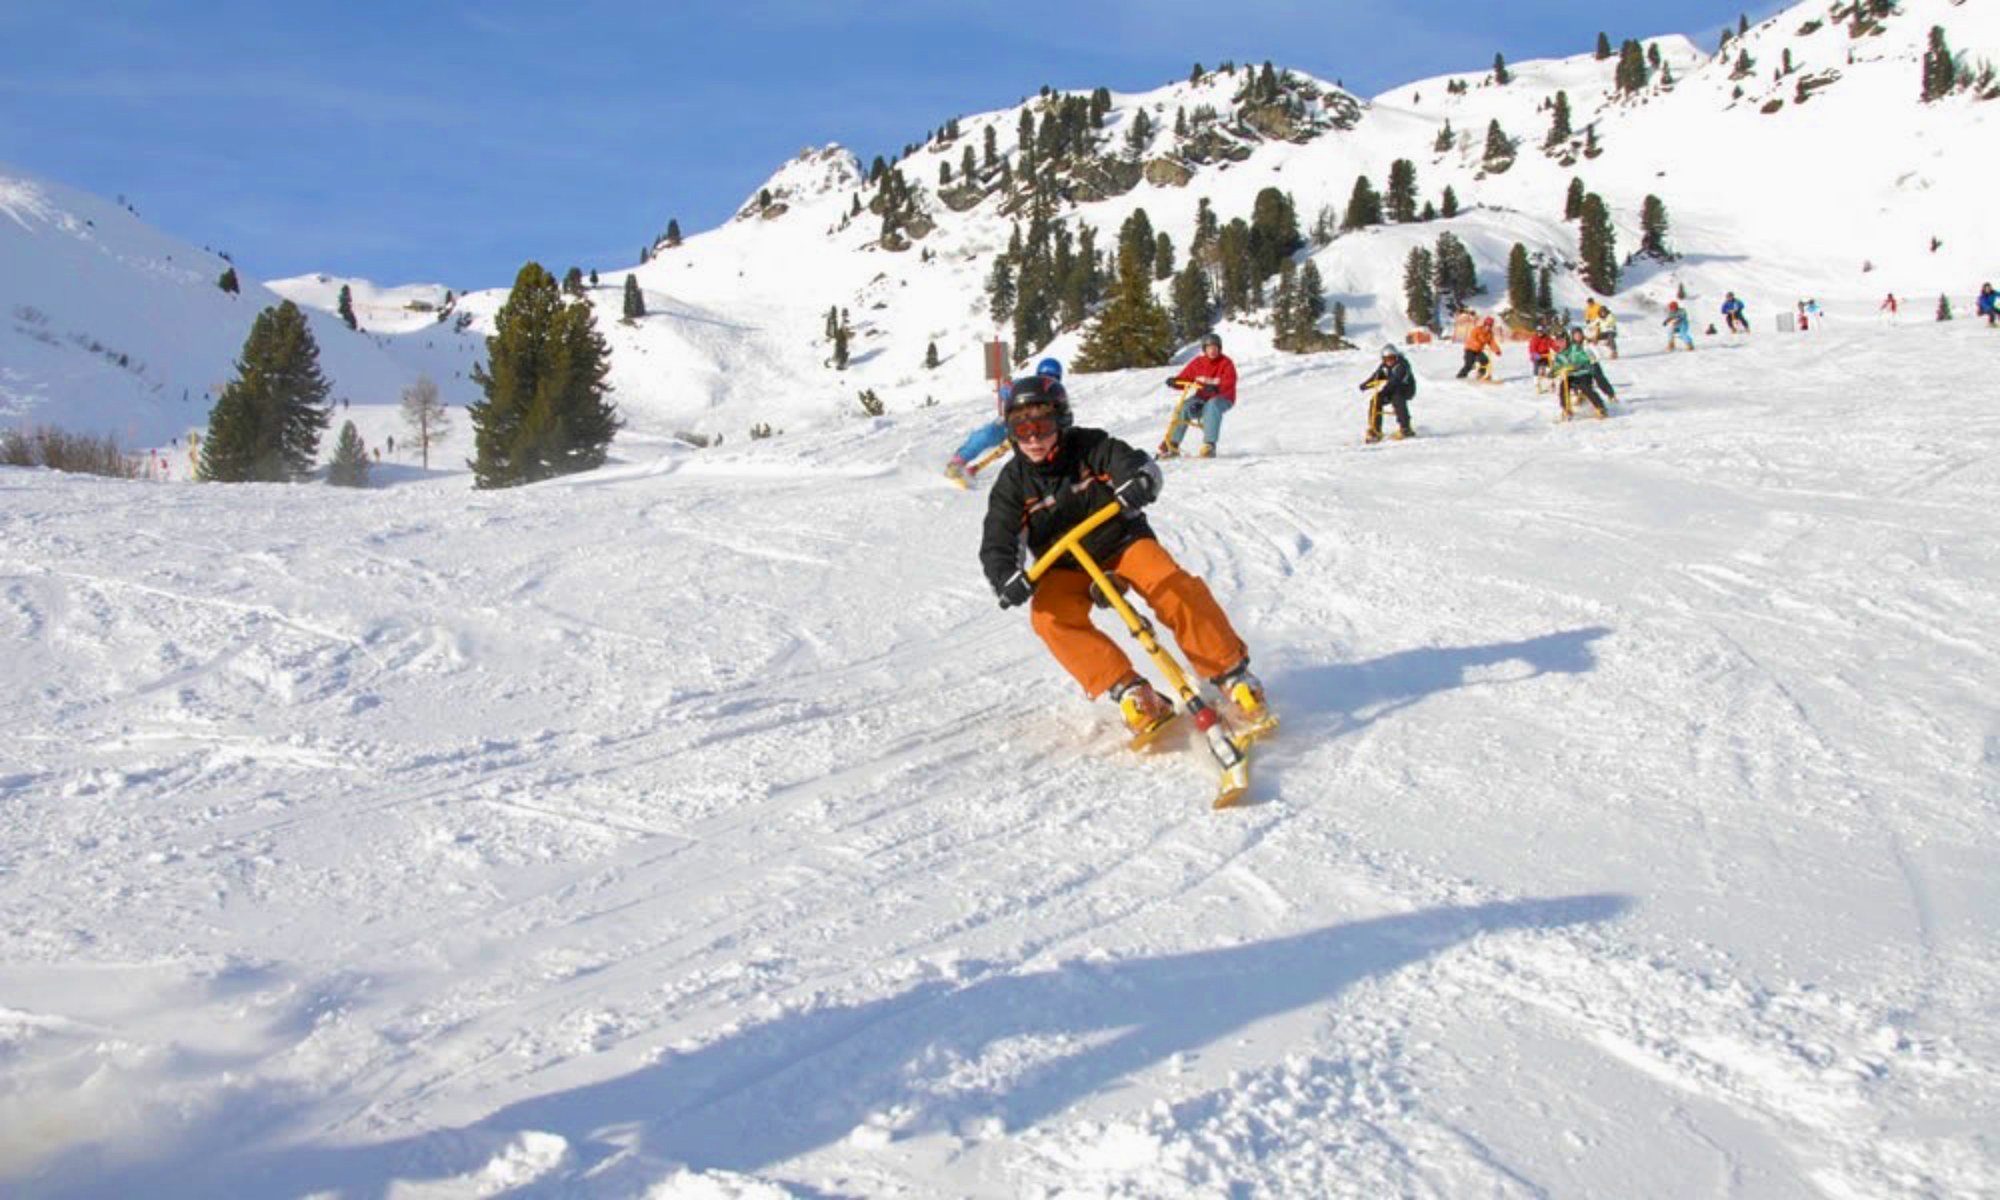 winter sports activities